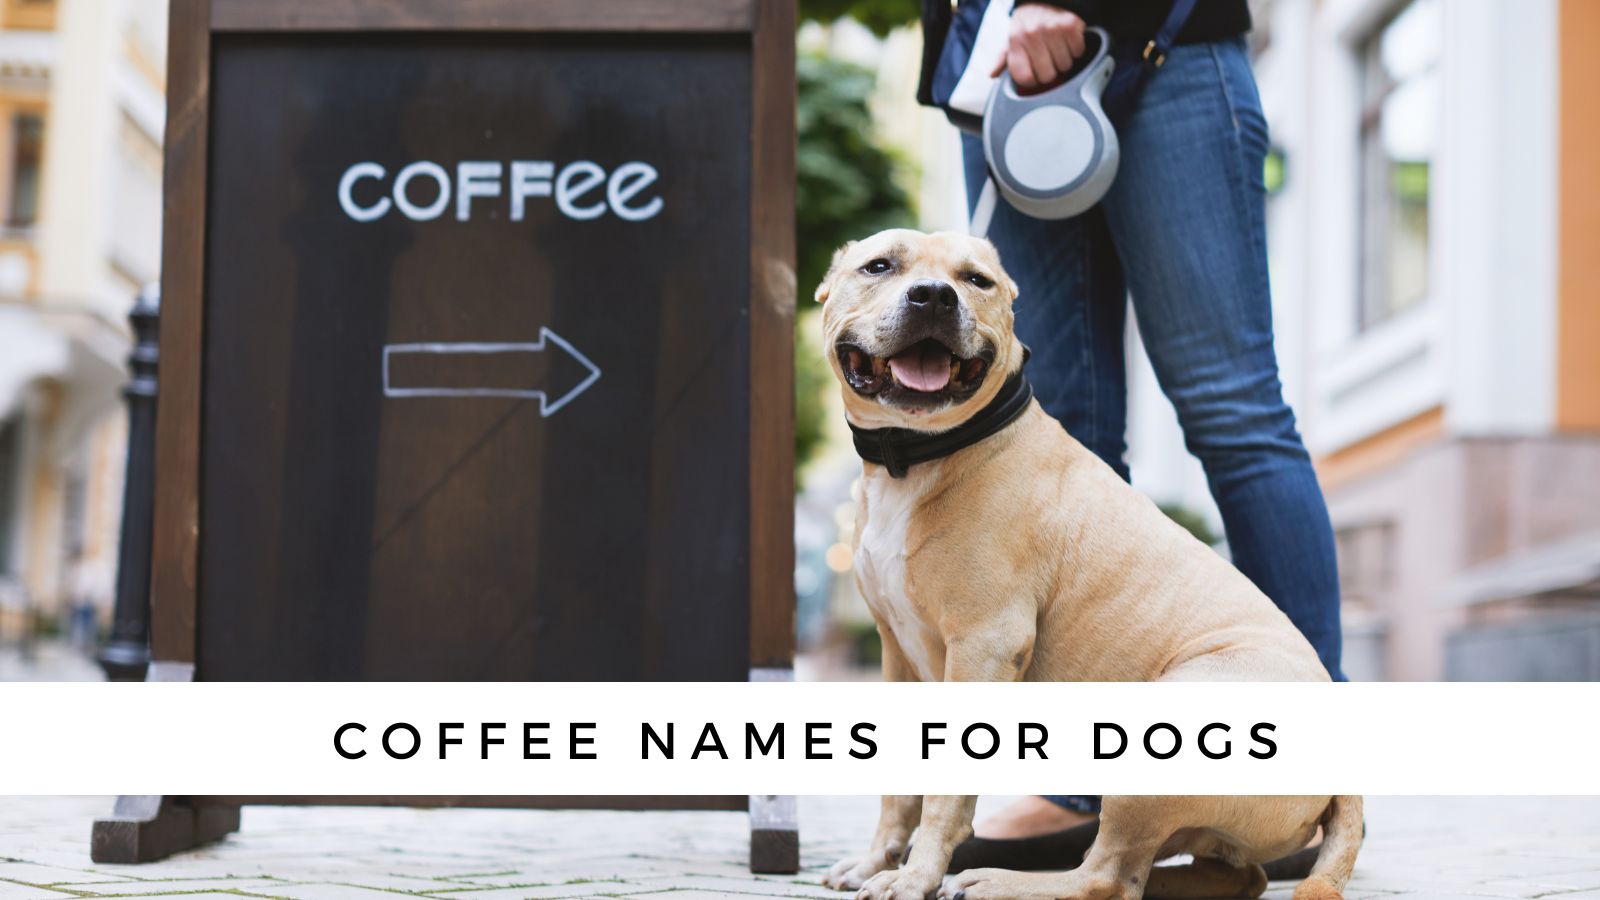 Coffee dog name - News7g